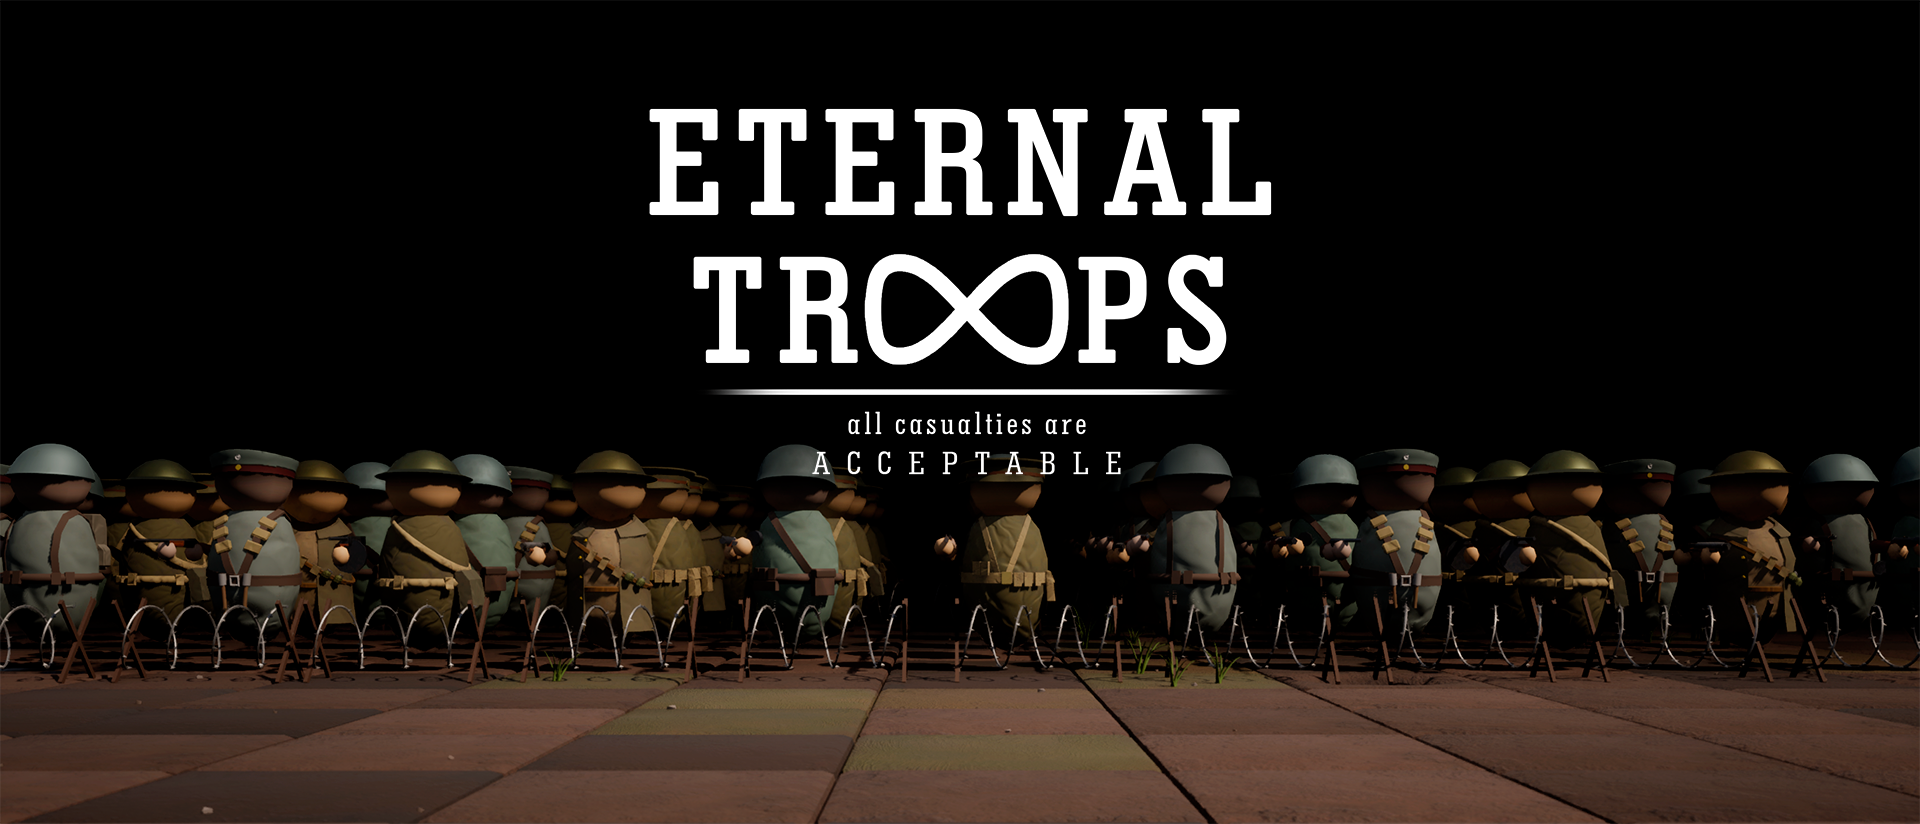 Eternal Troops